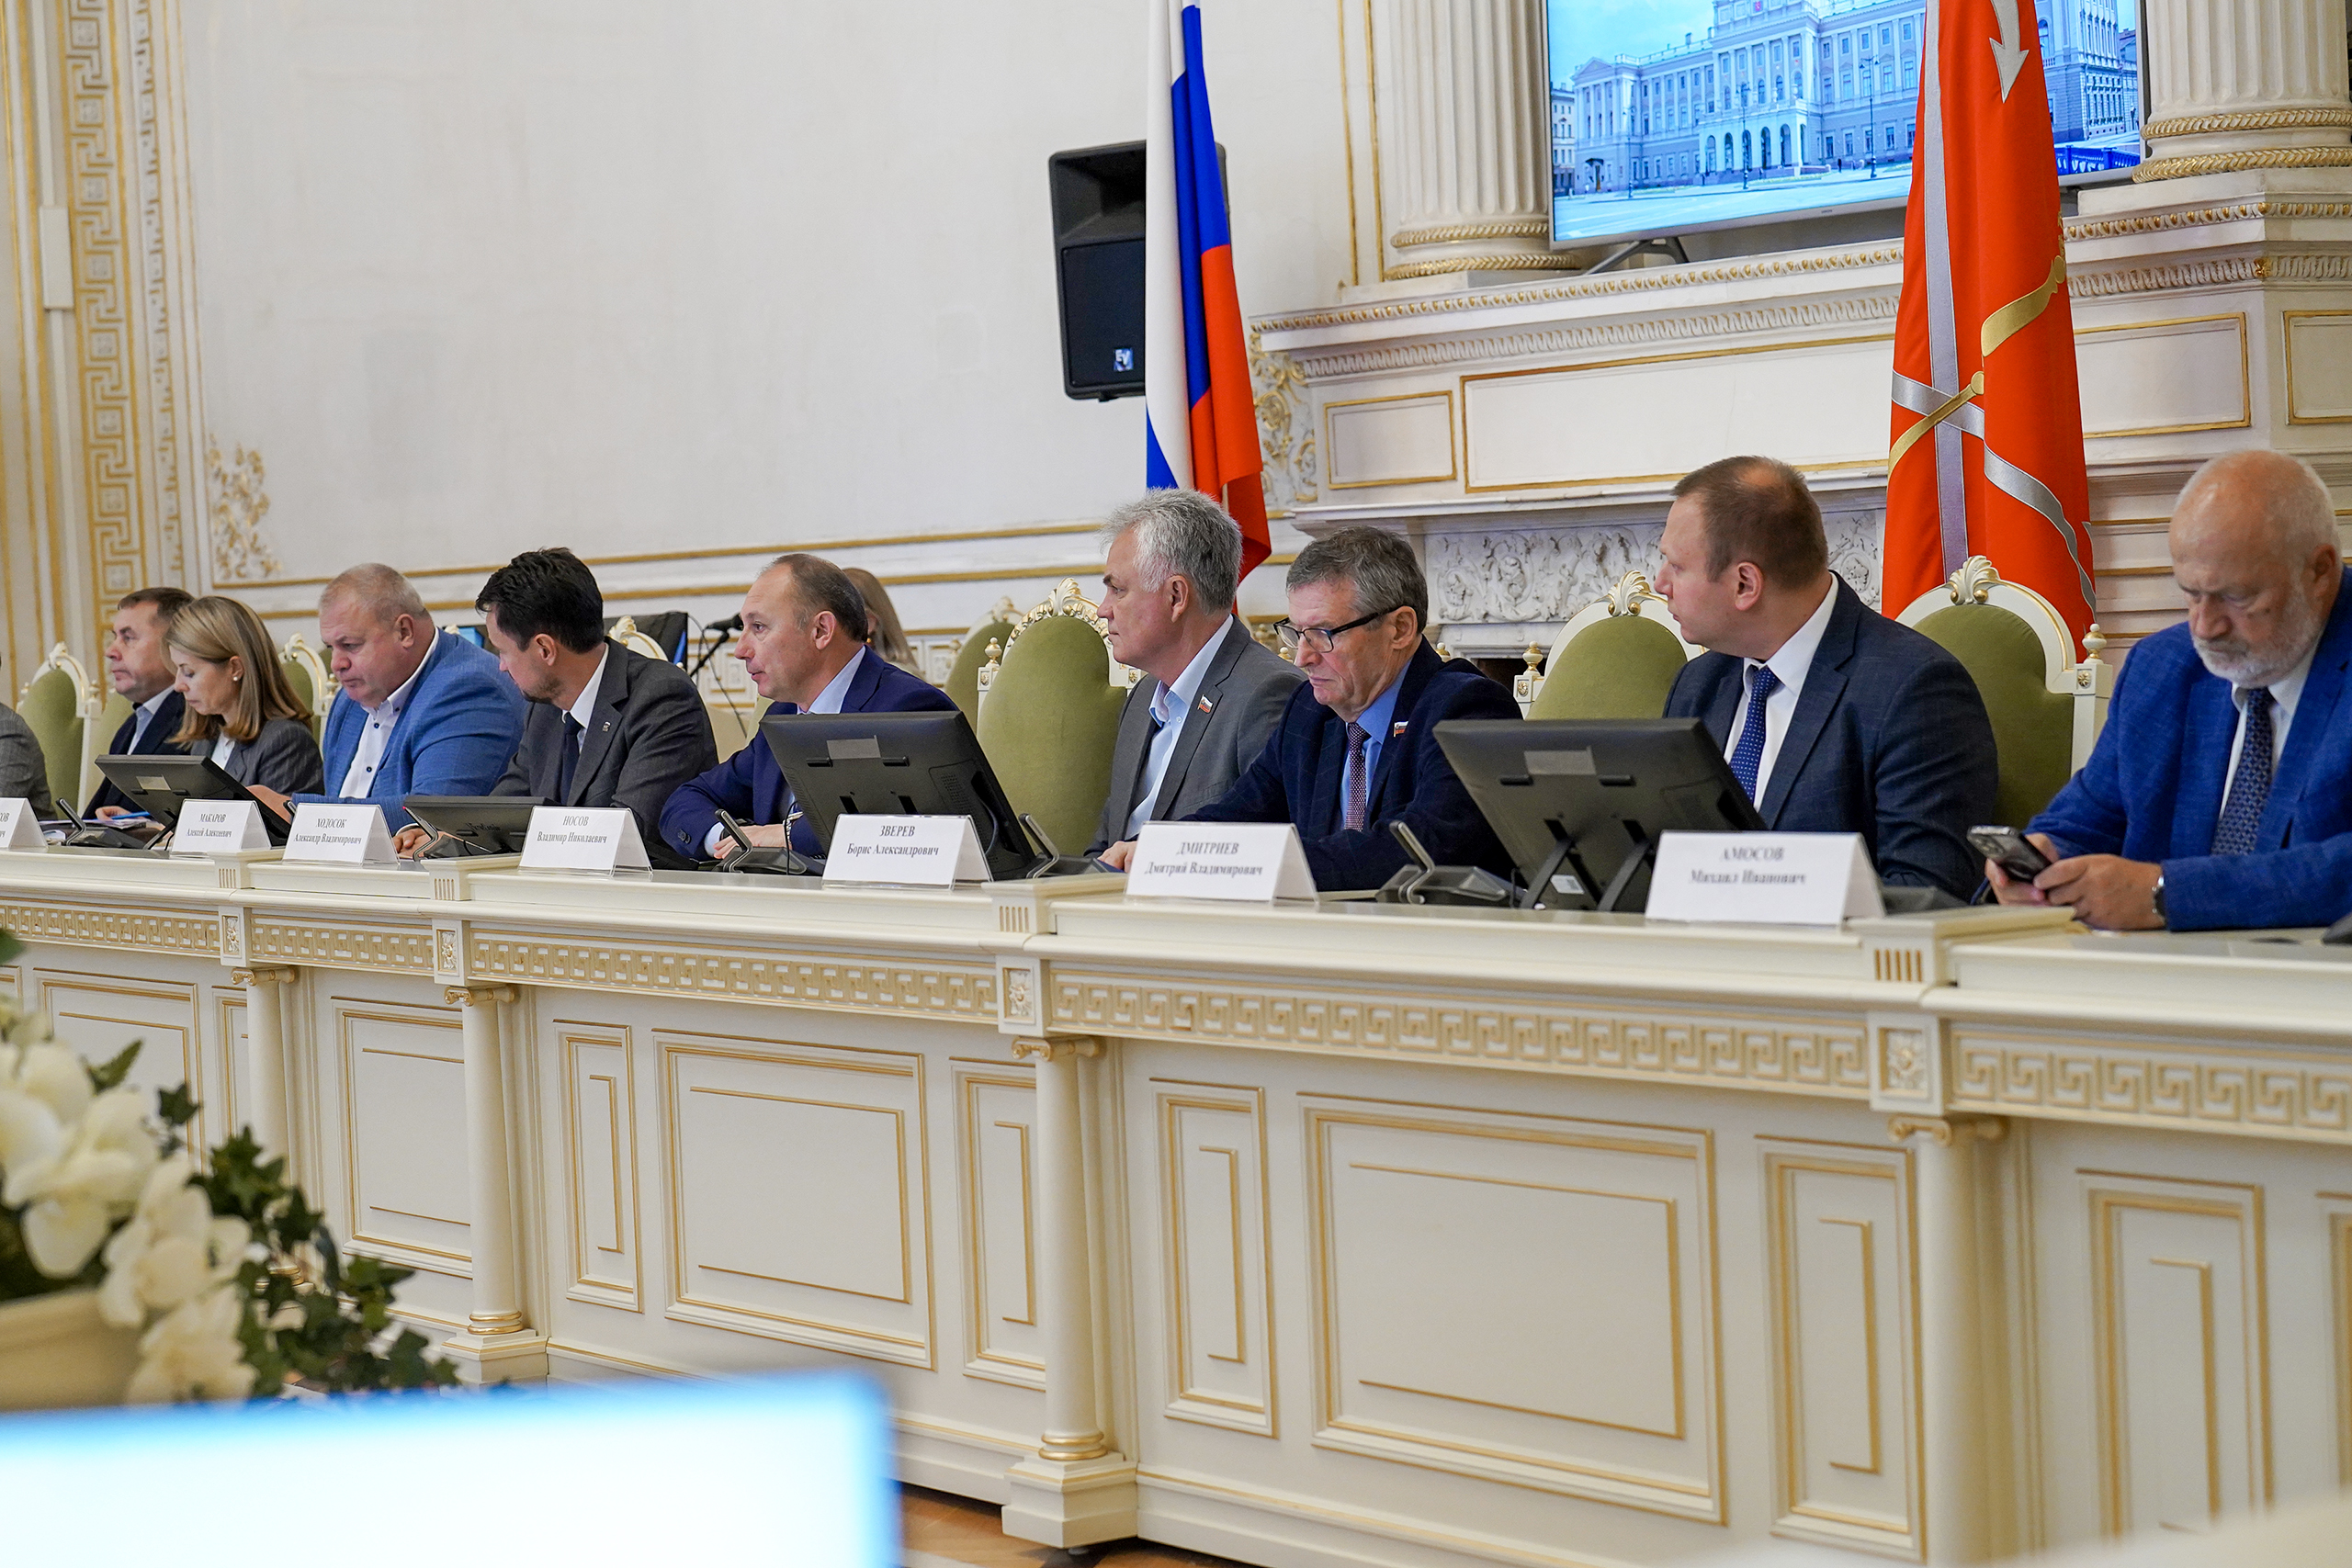 Комиссии обсудили совместно вопросы реконструкции системы обращения с отходами в Санкт-Петербурге